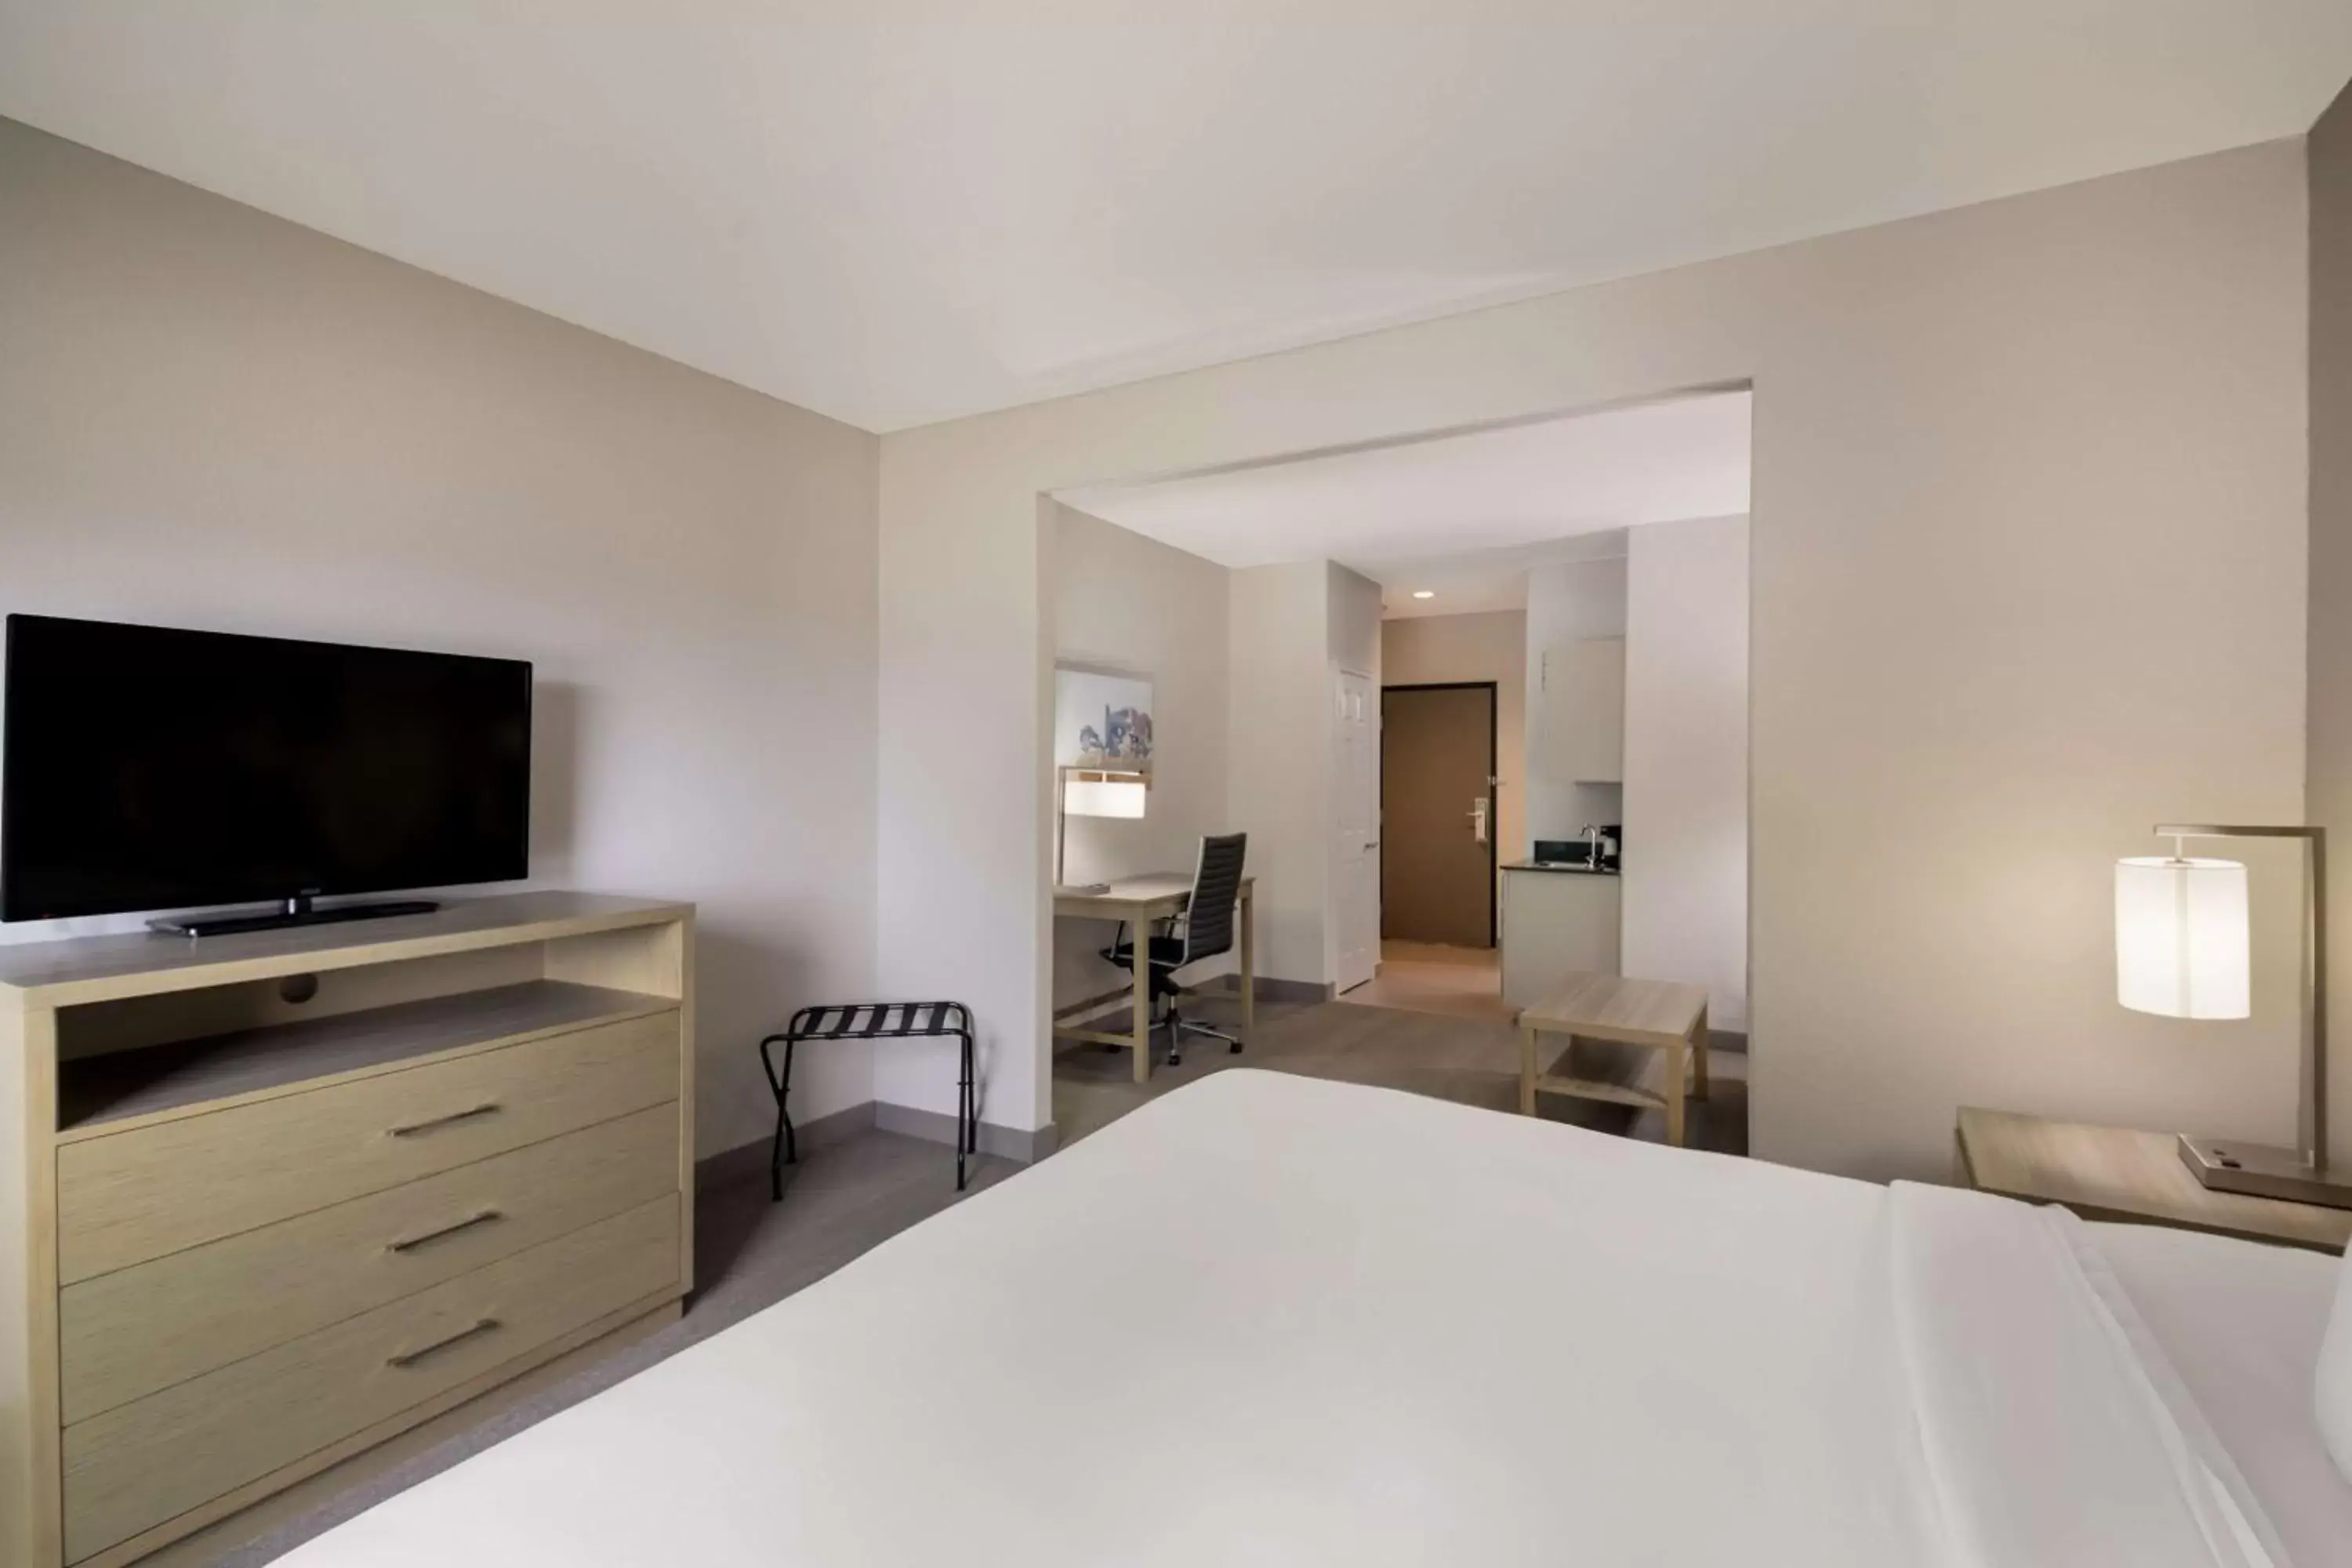 Bedroom, TV/Entertainment Center in Best Western Plus Killeen/Fort Hood Hotel & Suites